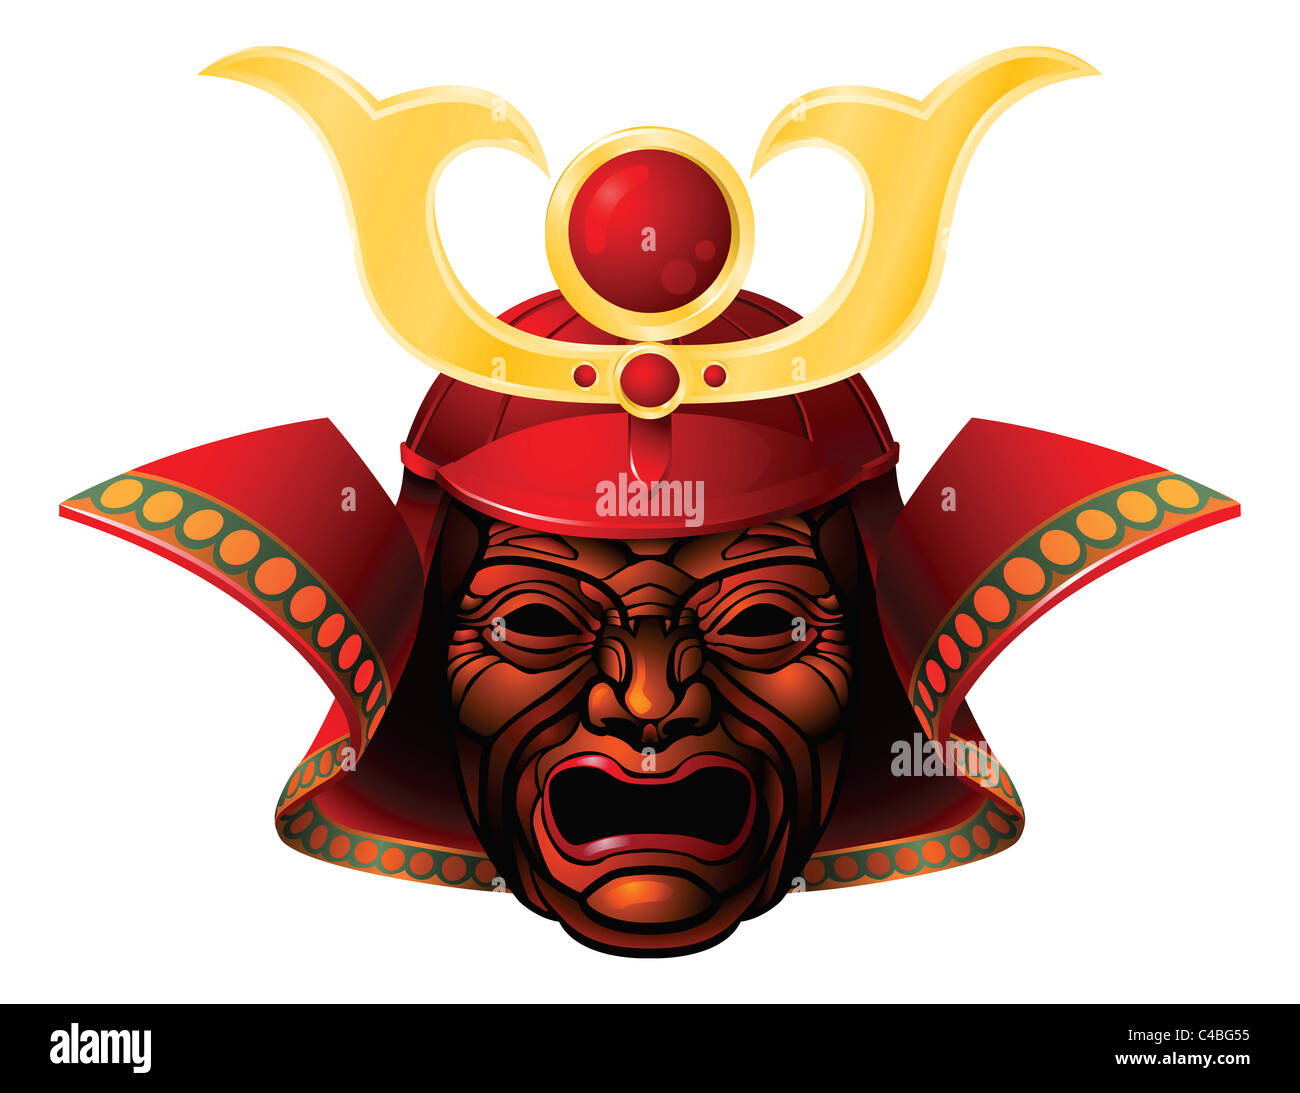 Une illustration d'une redoutable masque samouraï rouge et jaune Banque D'Images